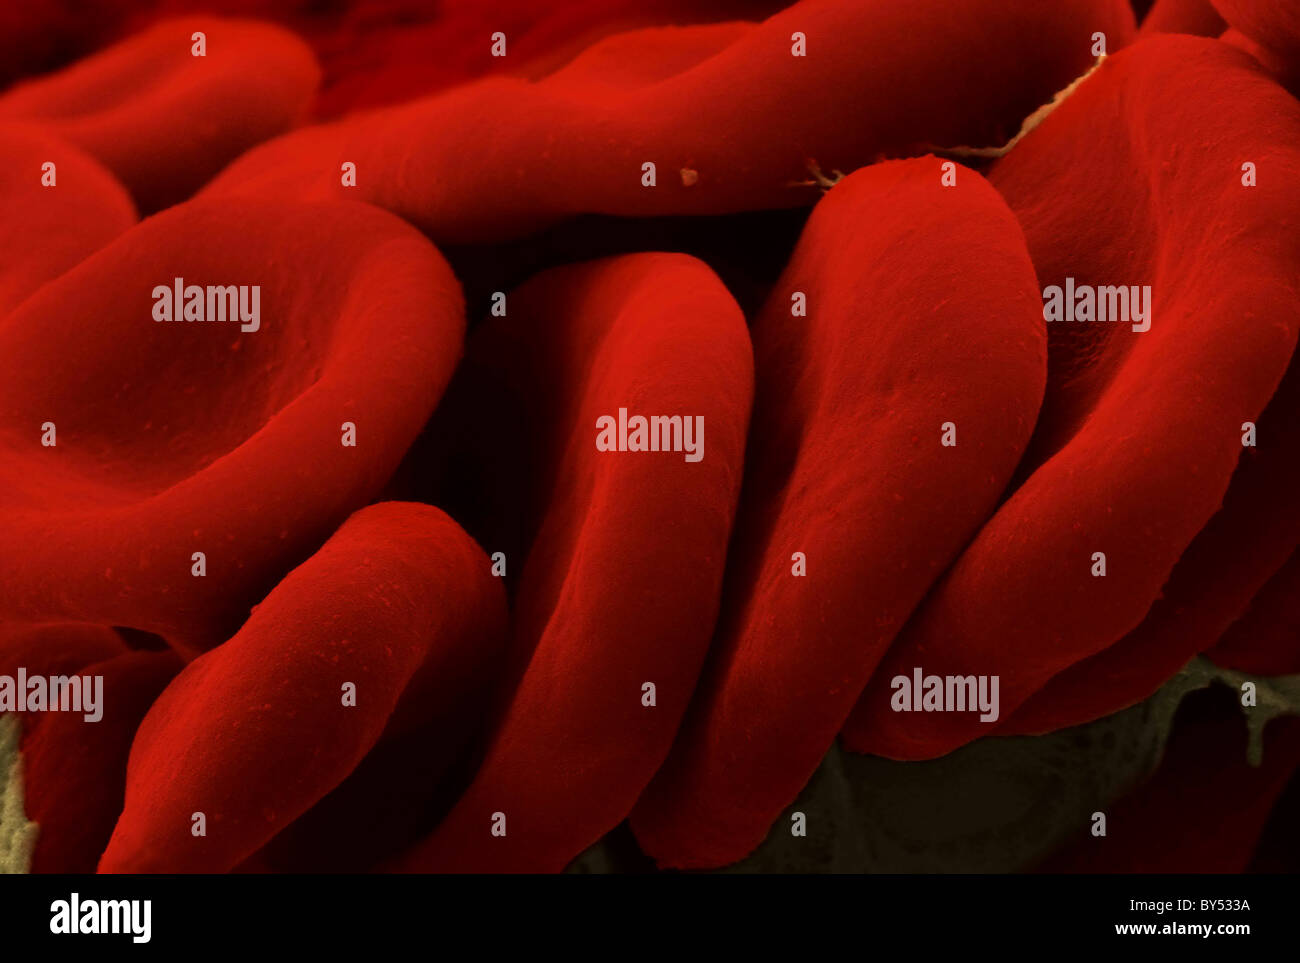 Eritrocitos (glóbulos rojos). La imagen fue tomada con una micrografía electrónica con falso color. Foto de stock